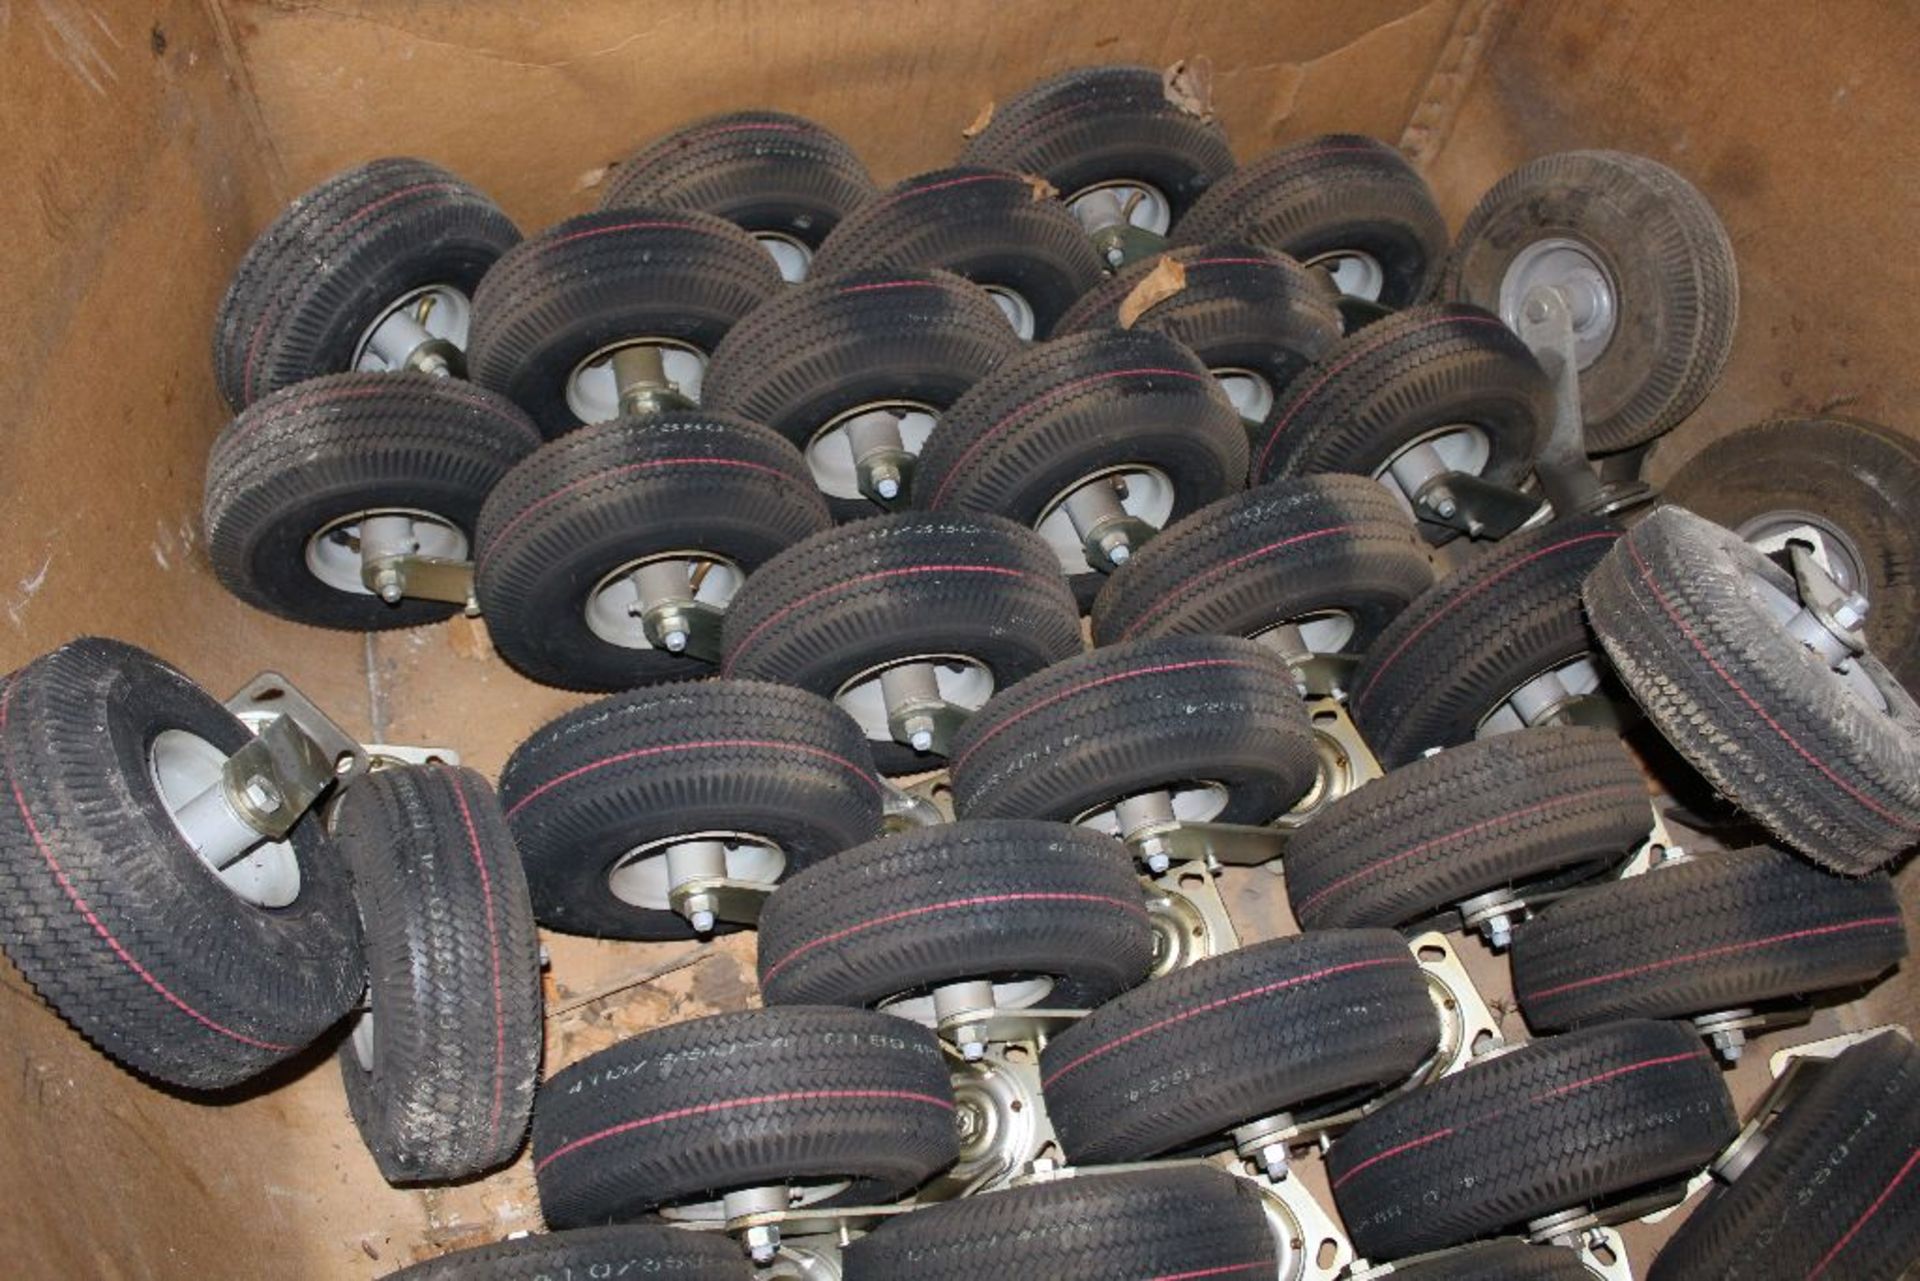 (2) Pallets rims/tires, 410/350.